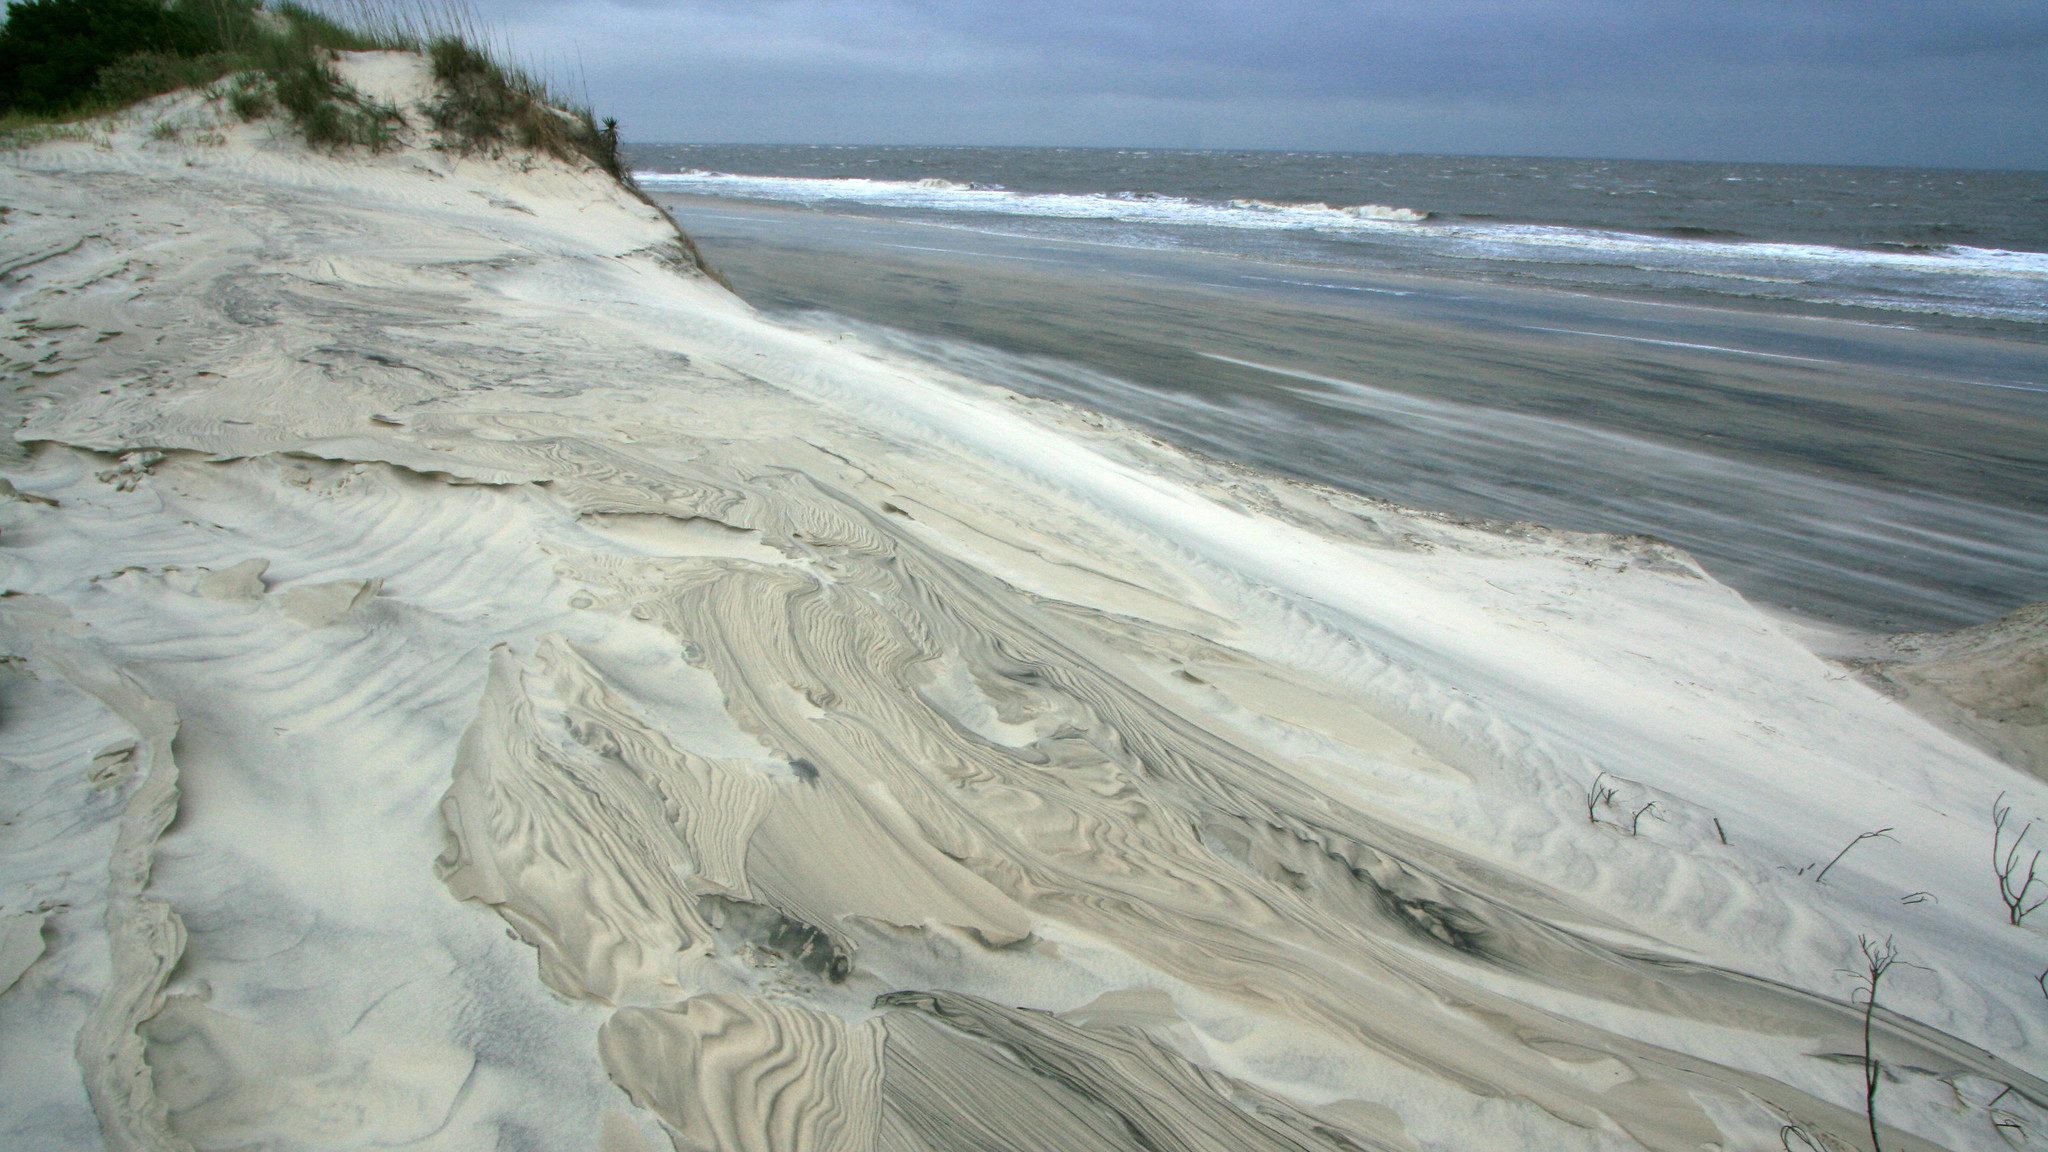 Beach scene with white swirled sand